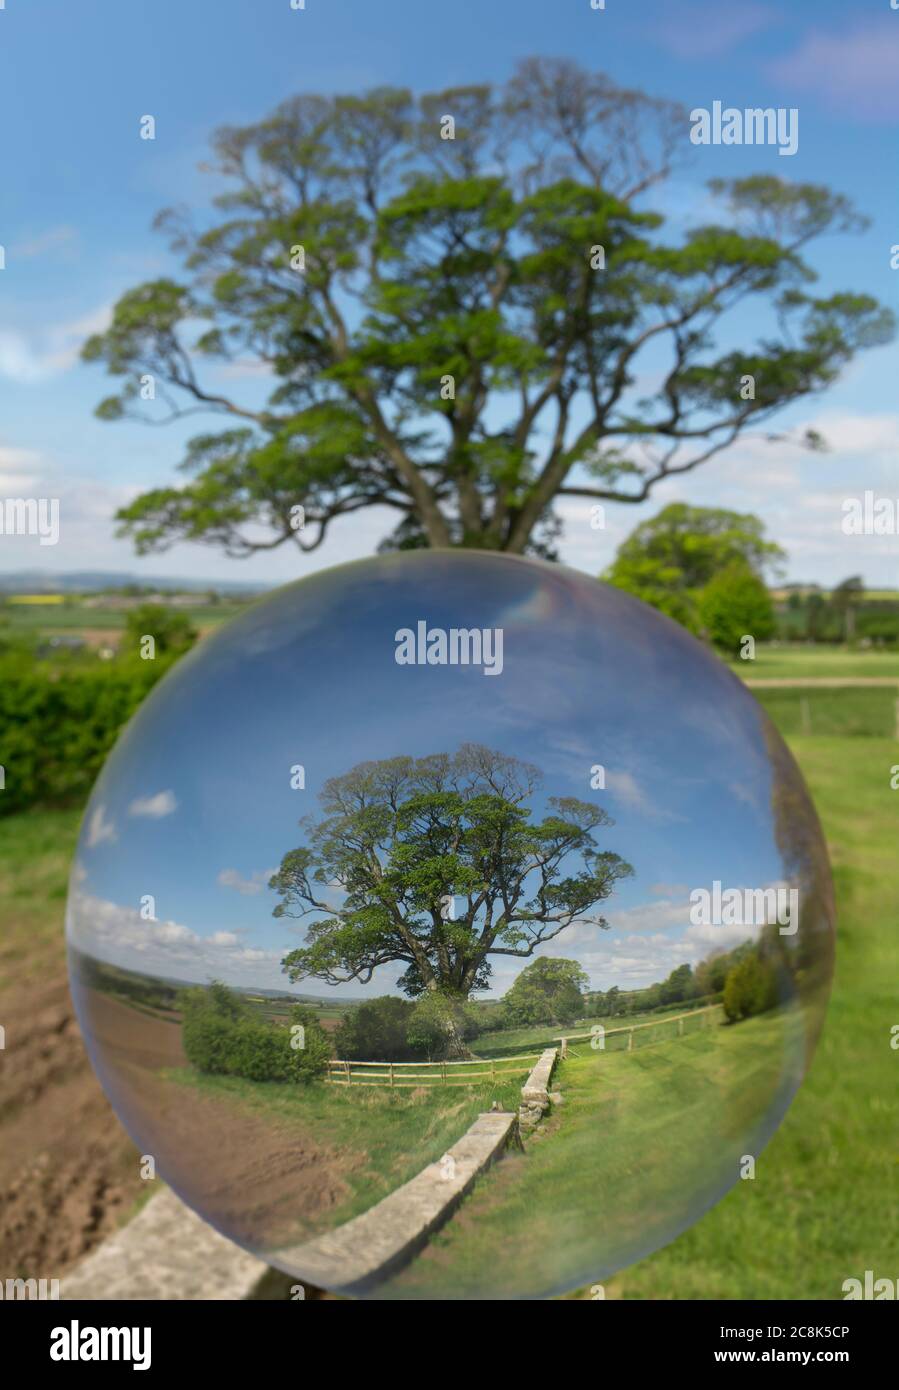 Grand arbre vu à travers une boule de cristal Banque D'Images